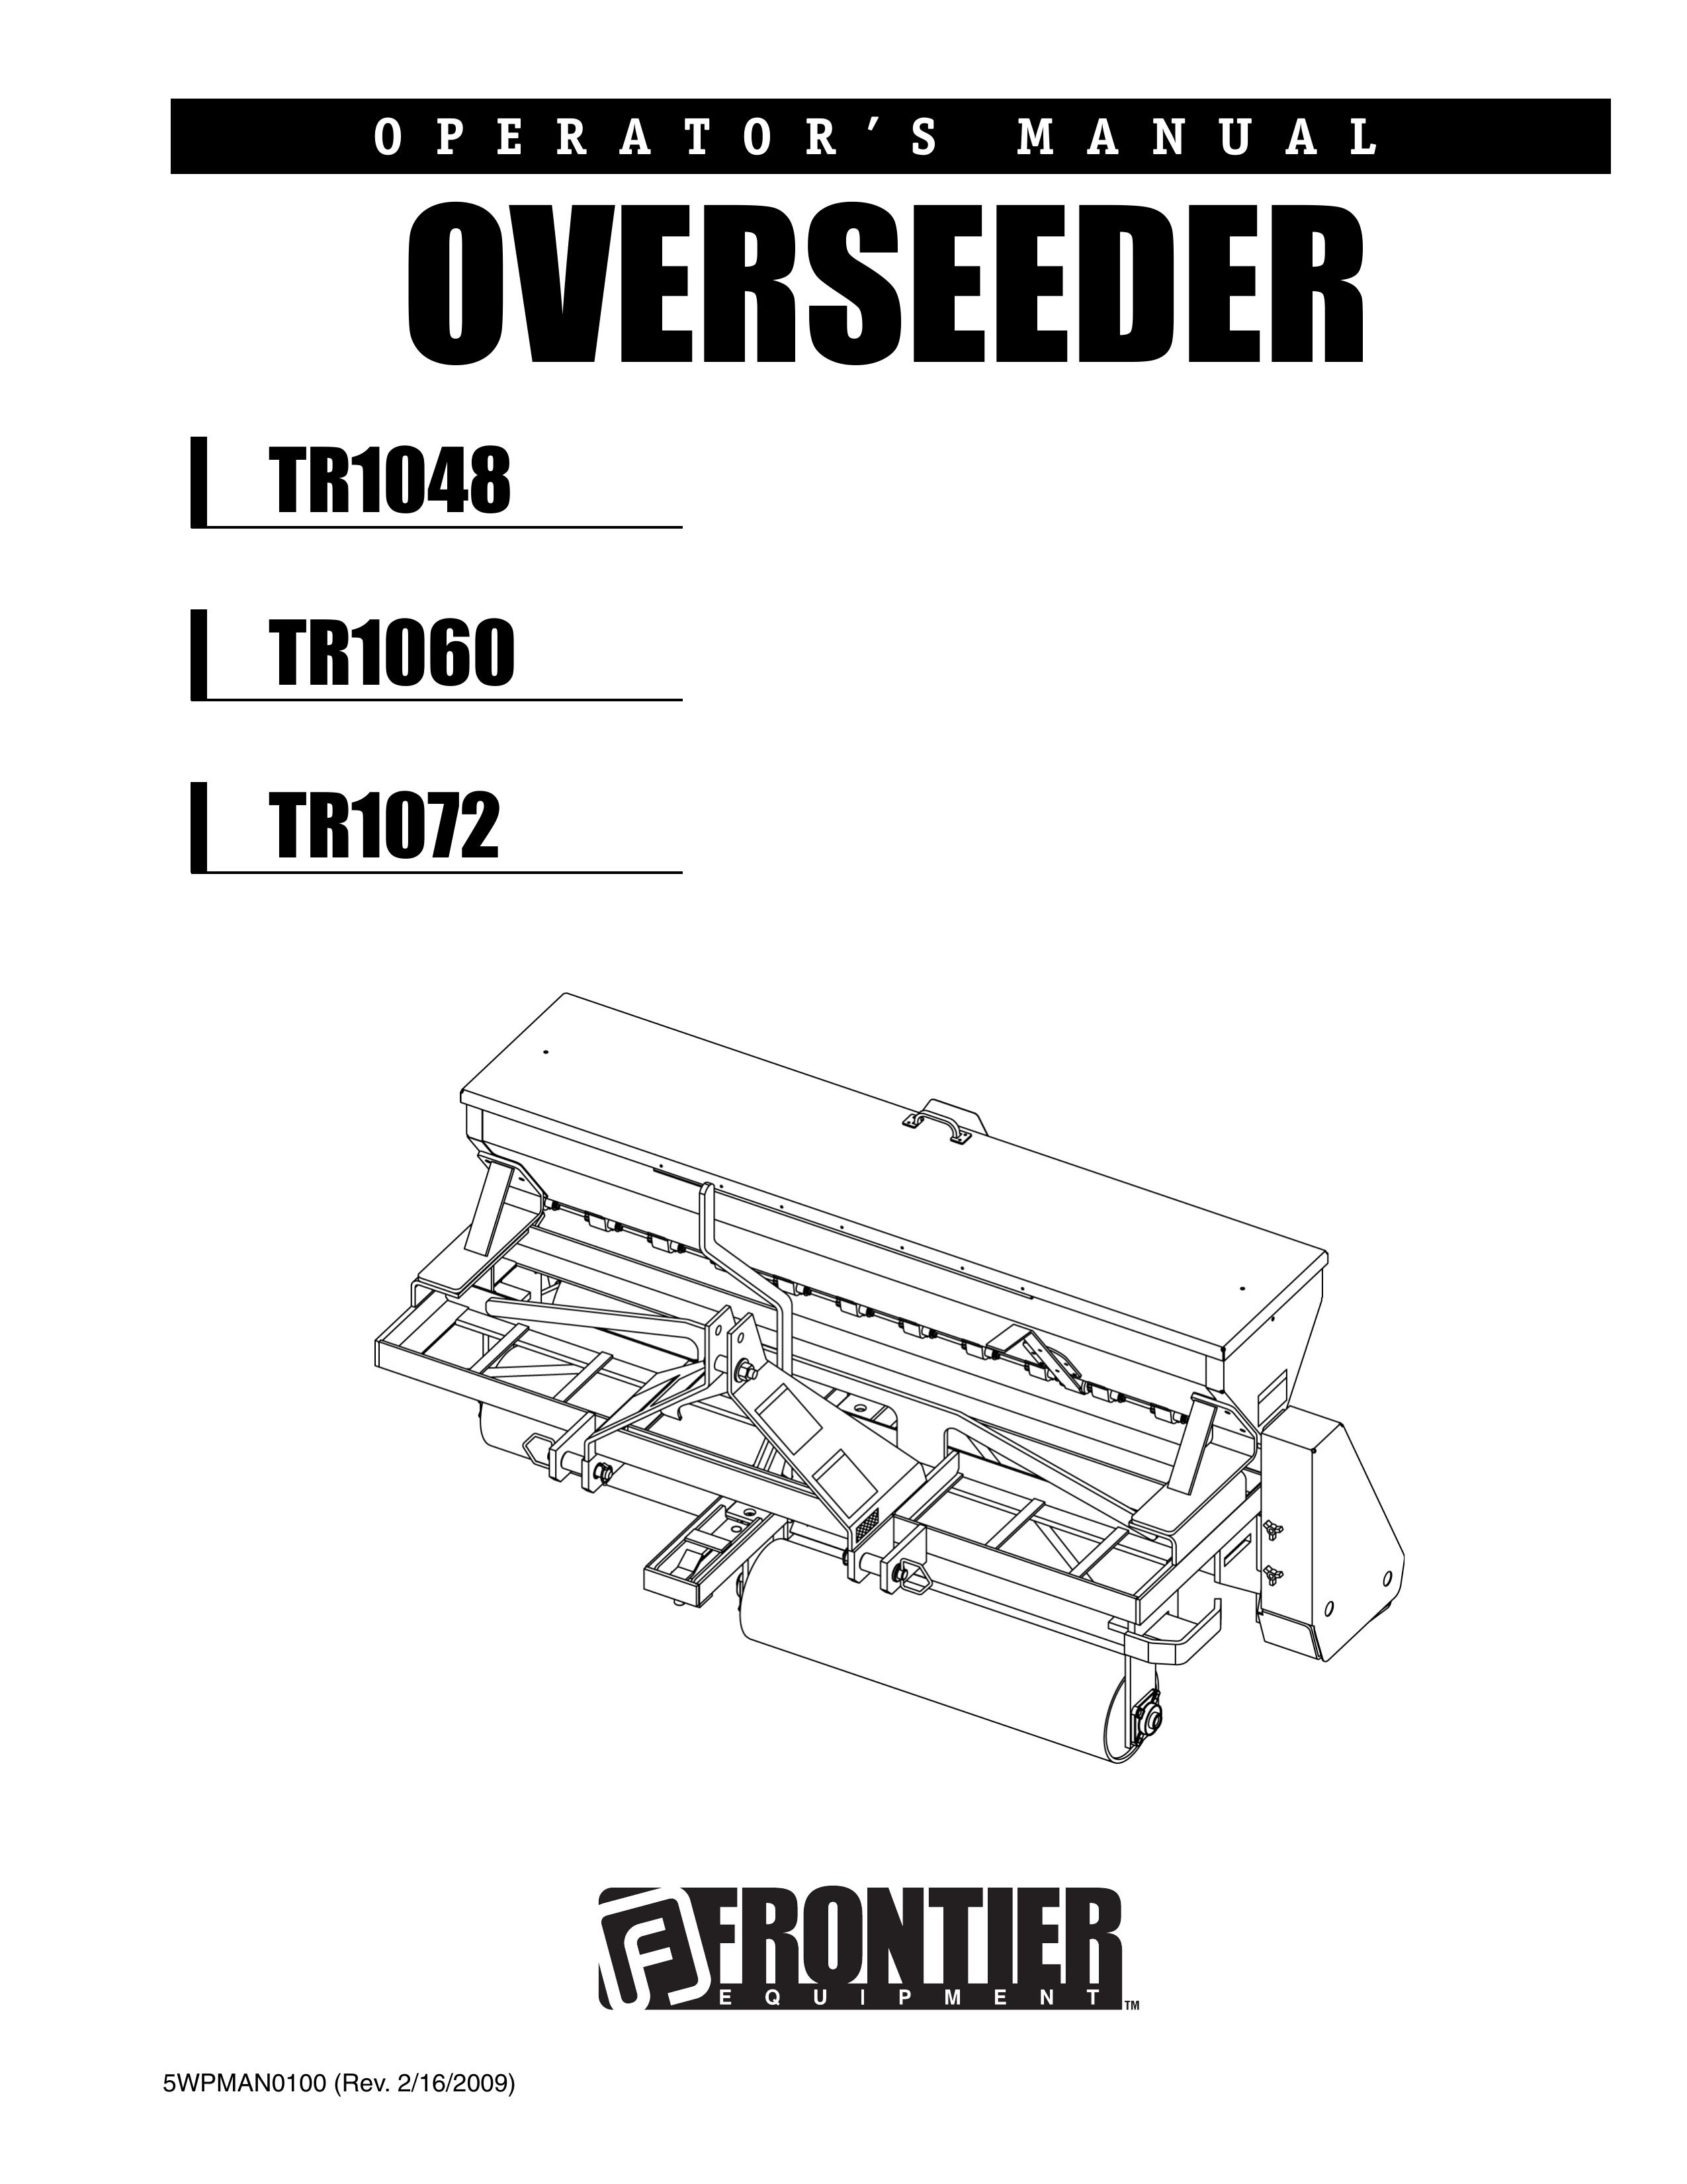 John Deere TR1048 Spreader User Manual